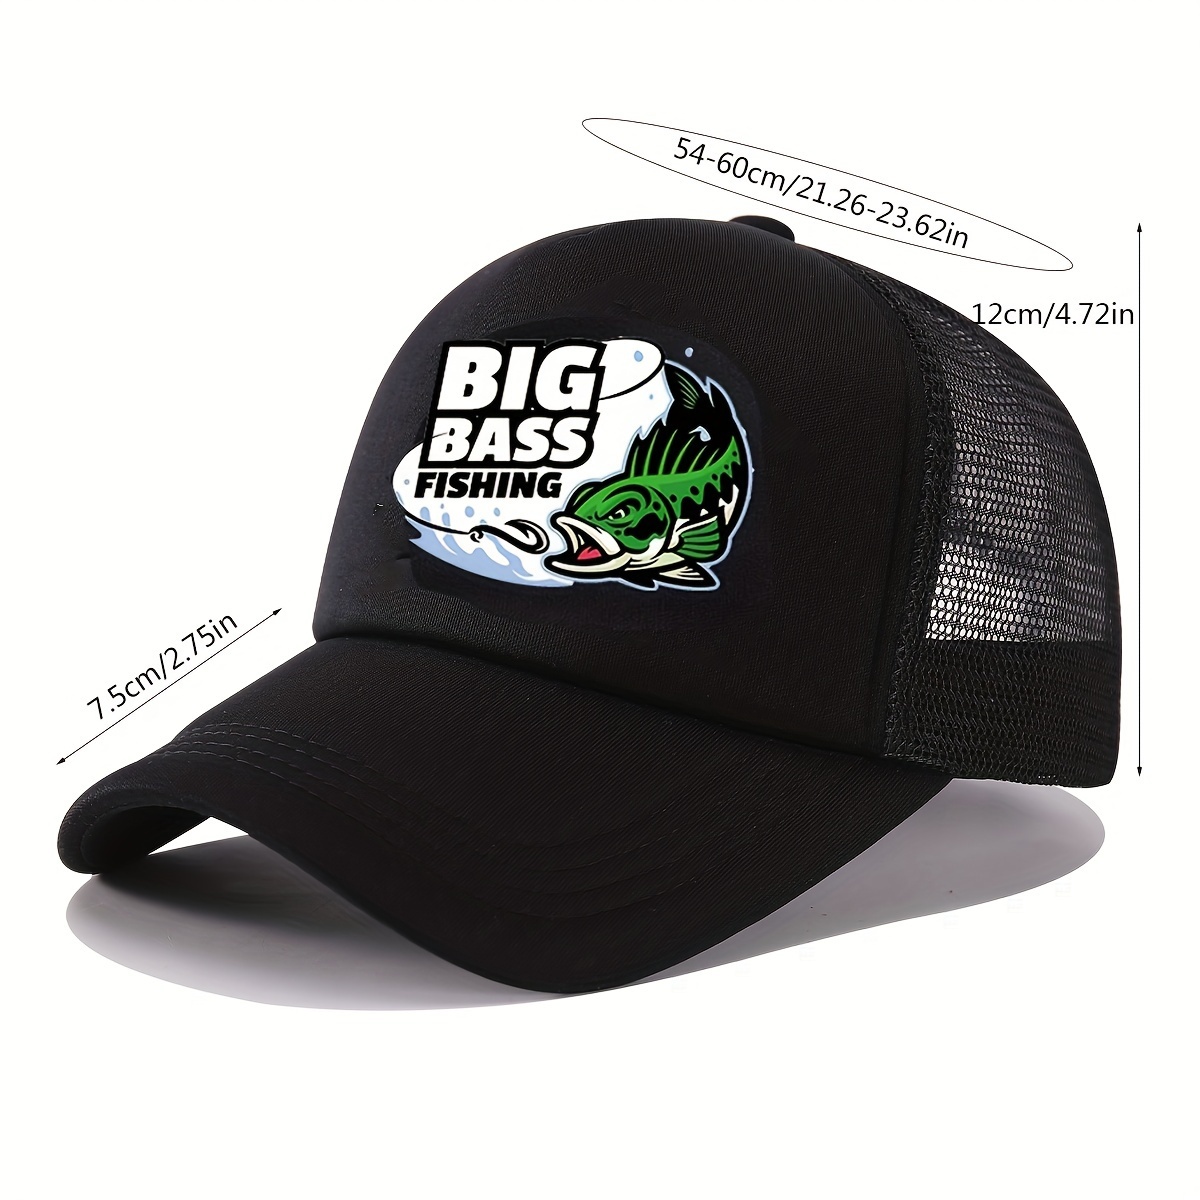 Big 3 Fishing Trucker Hat